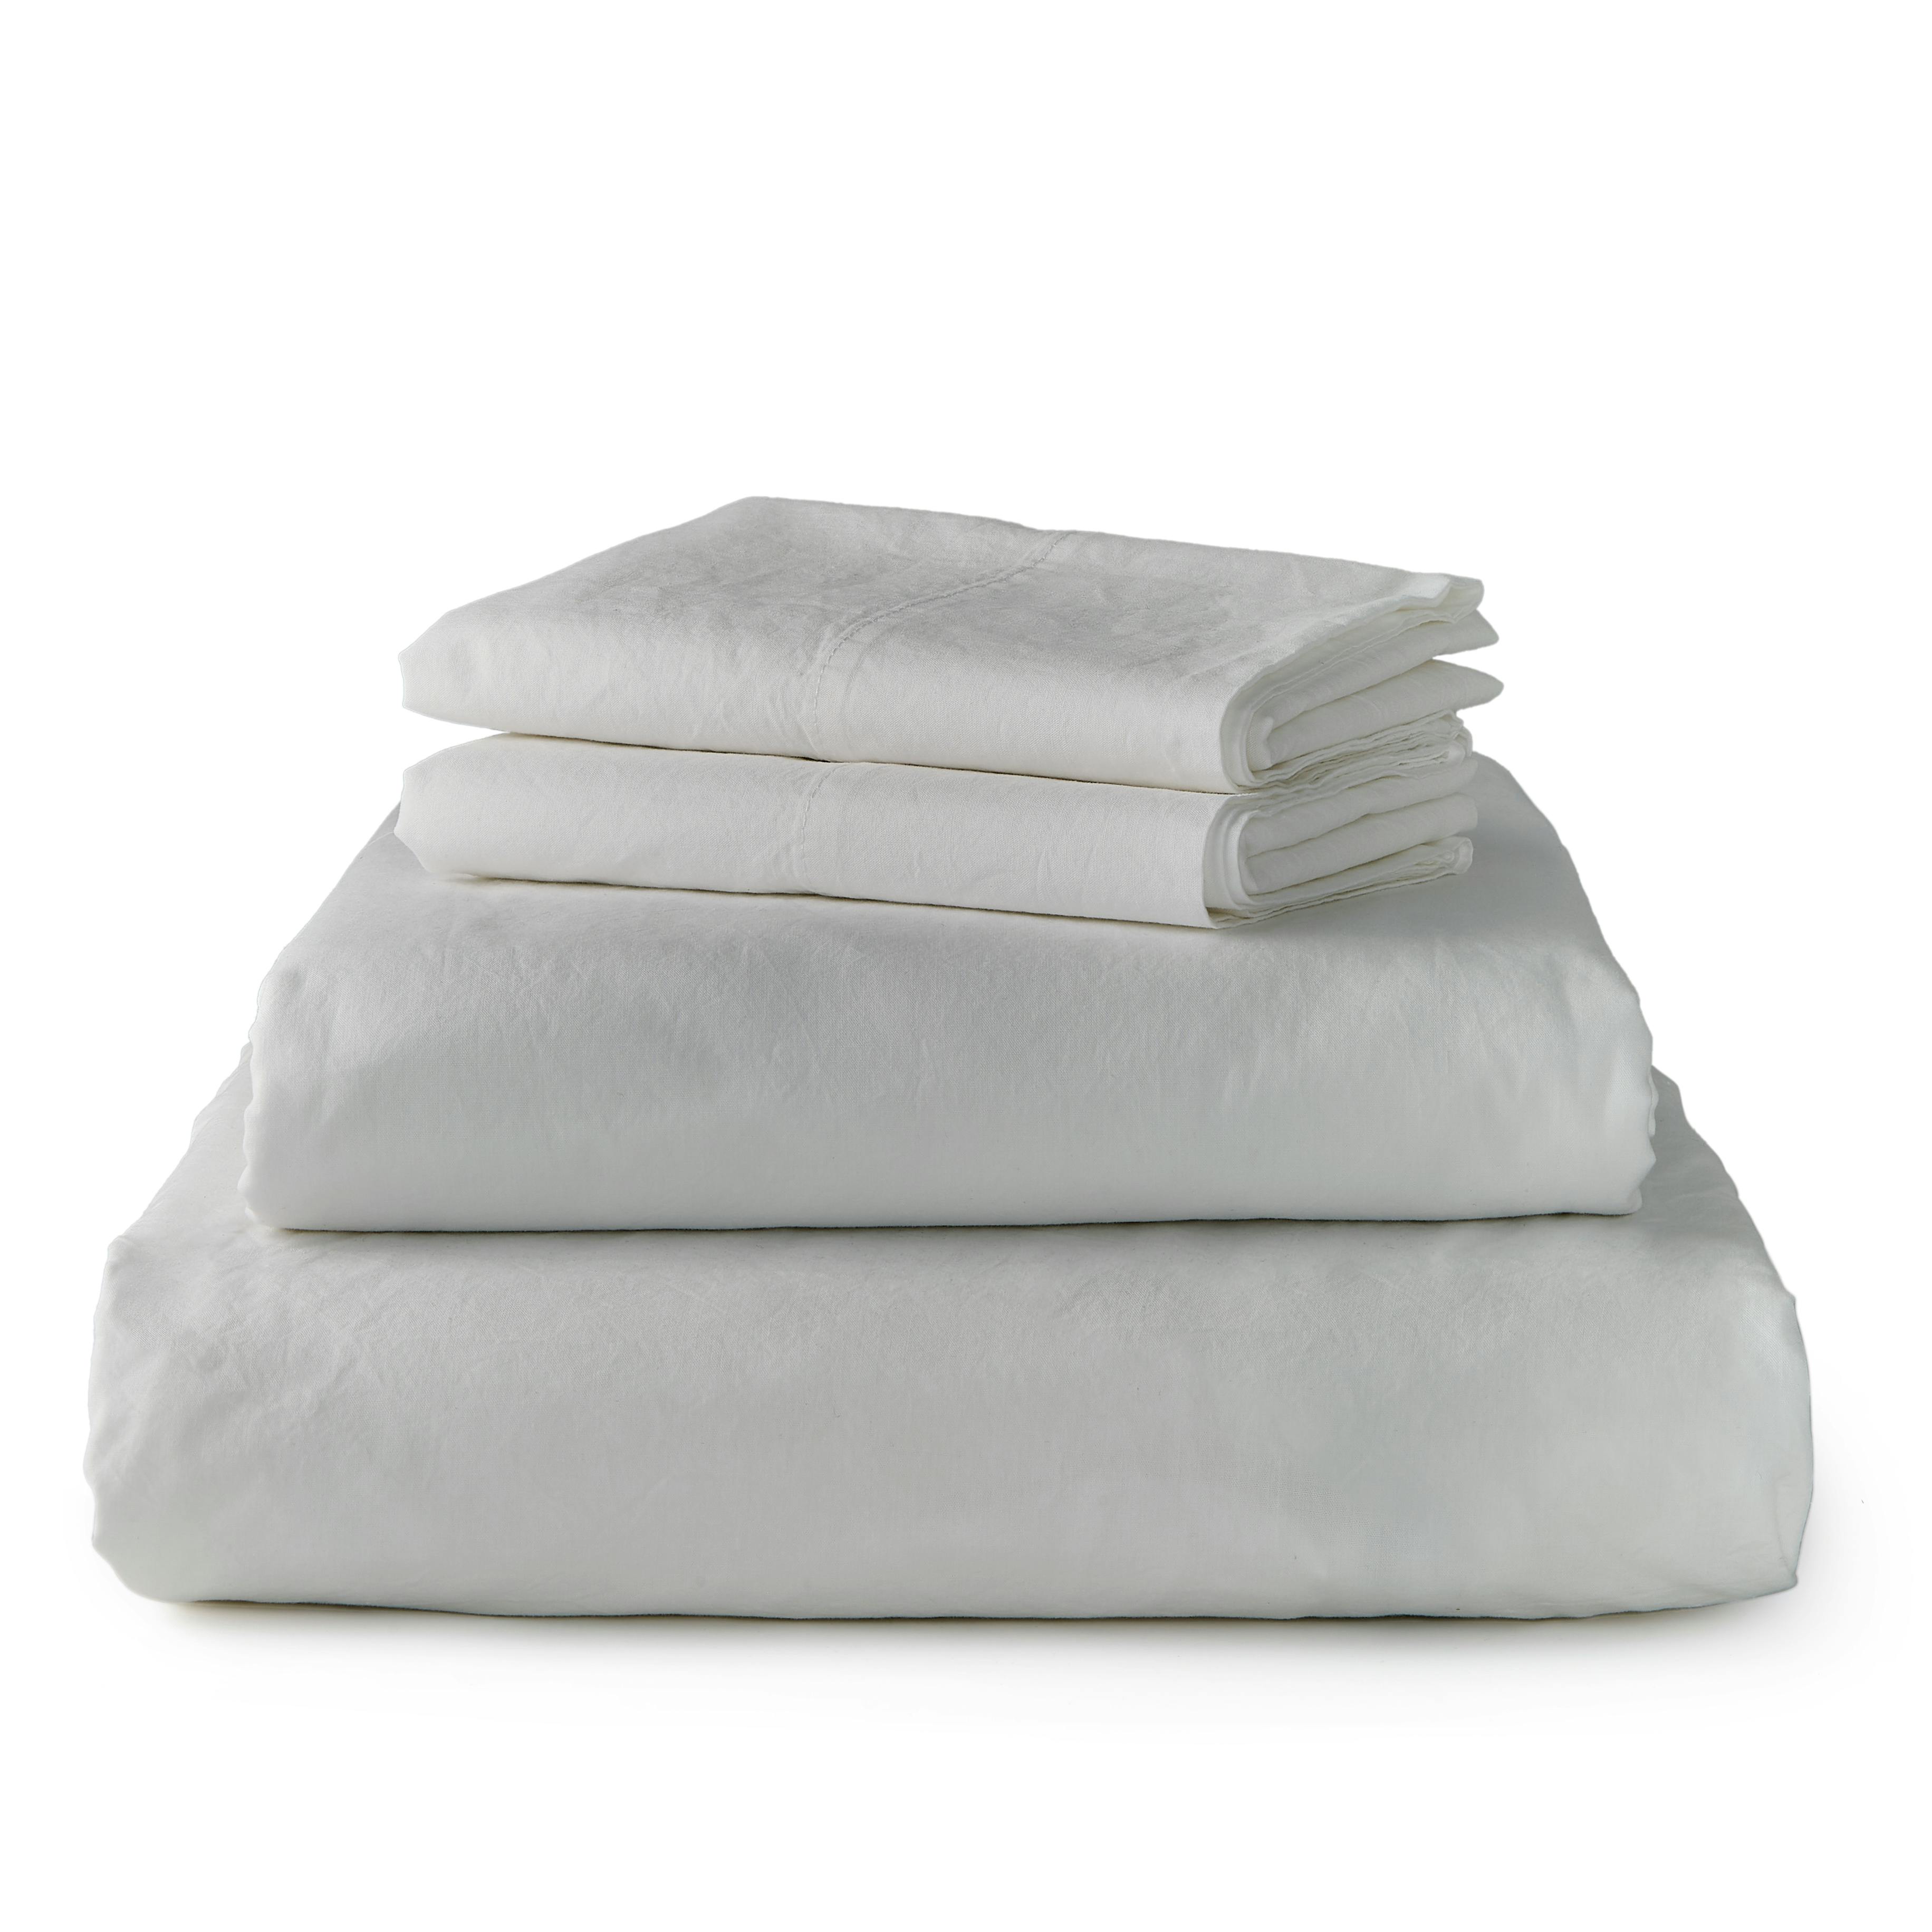 Percale Organic Cotton Sheet Set - King